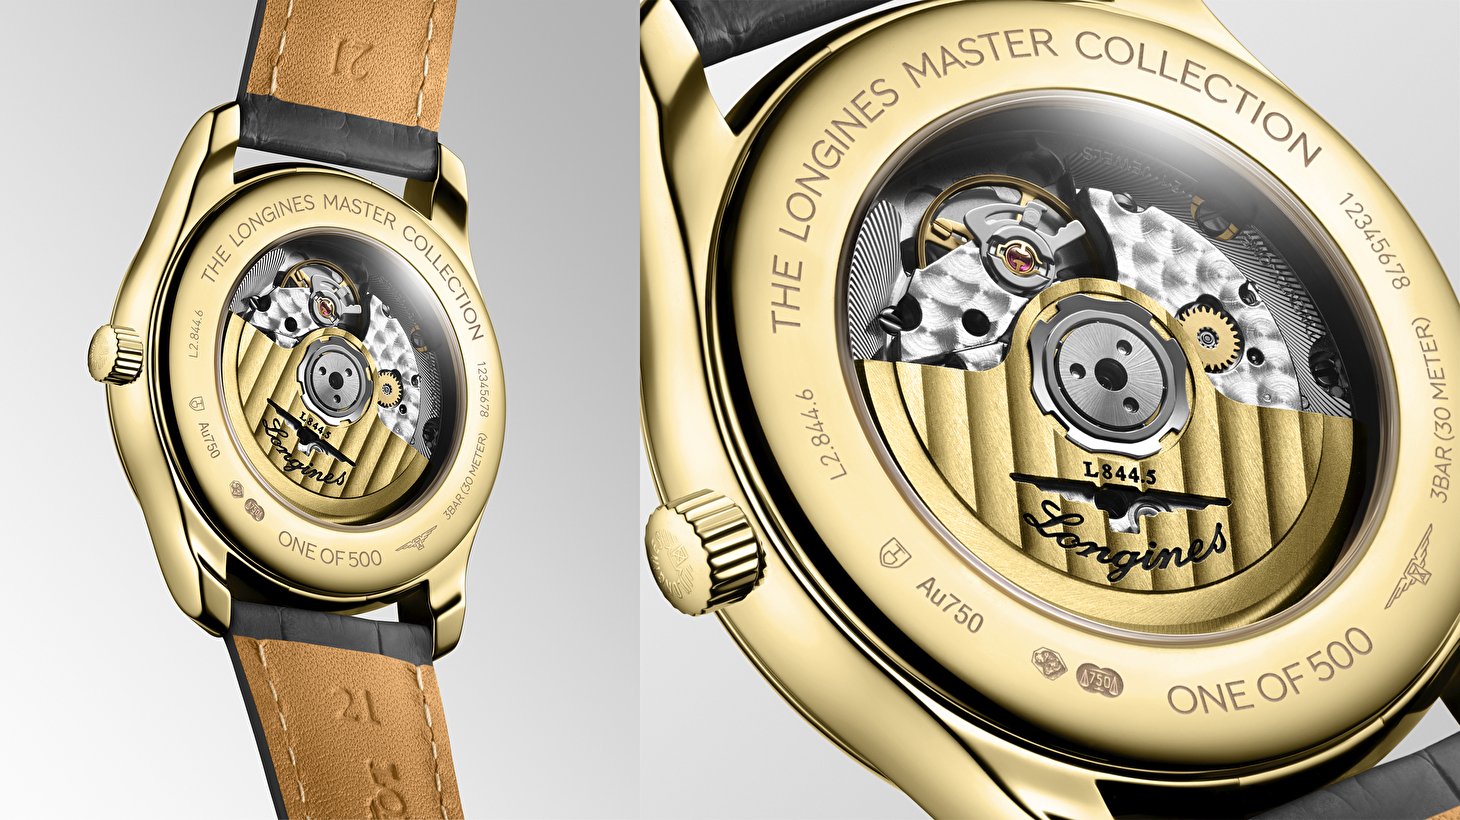 Longines Master Collection - новые эксклюзивные модели GMT в золотом корпусе